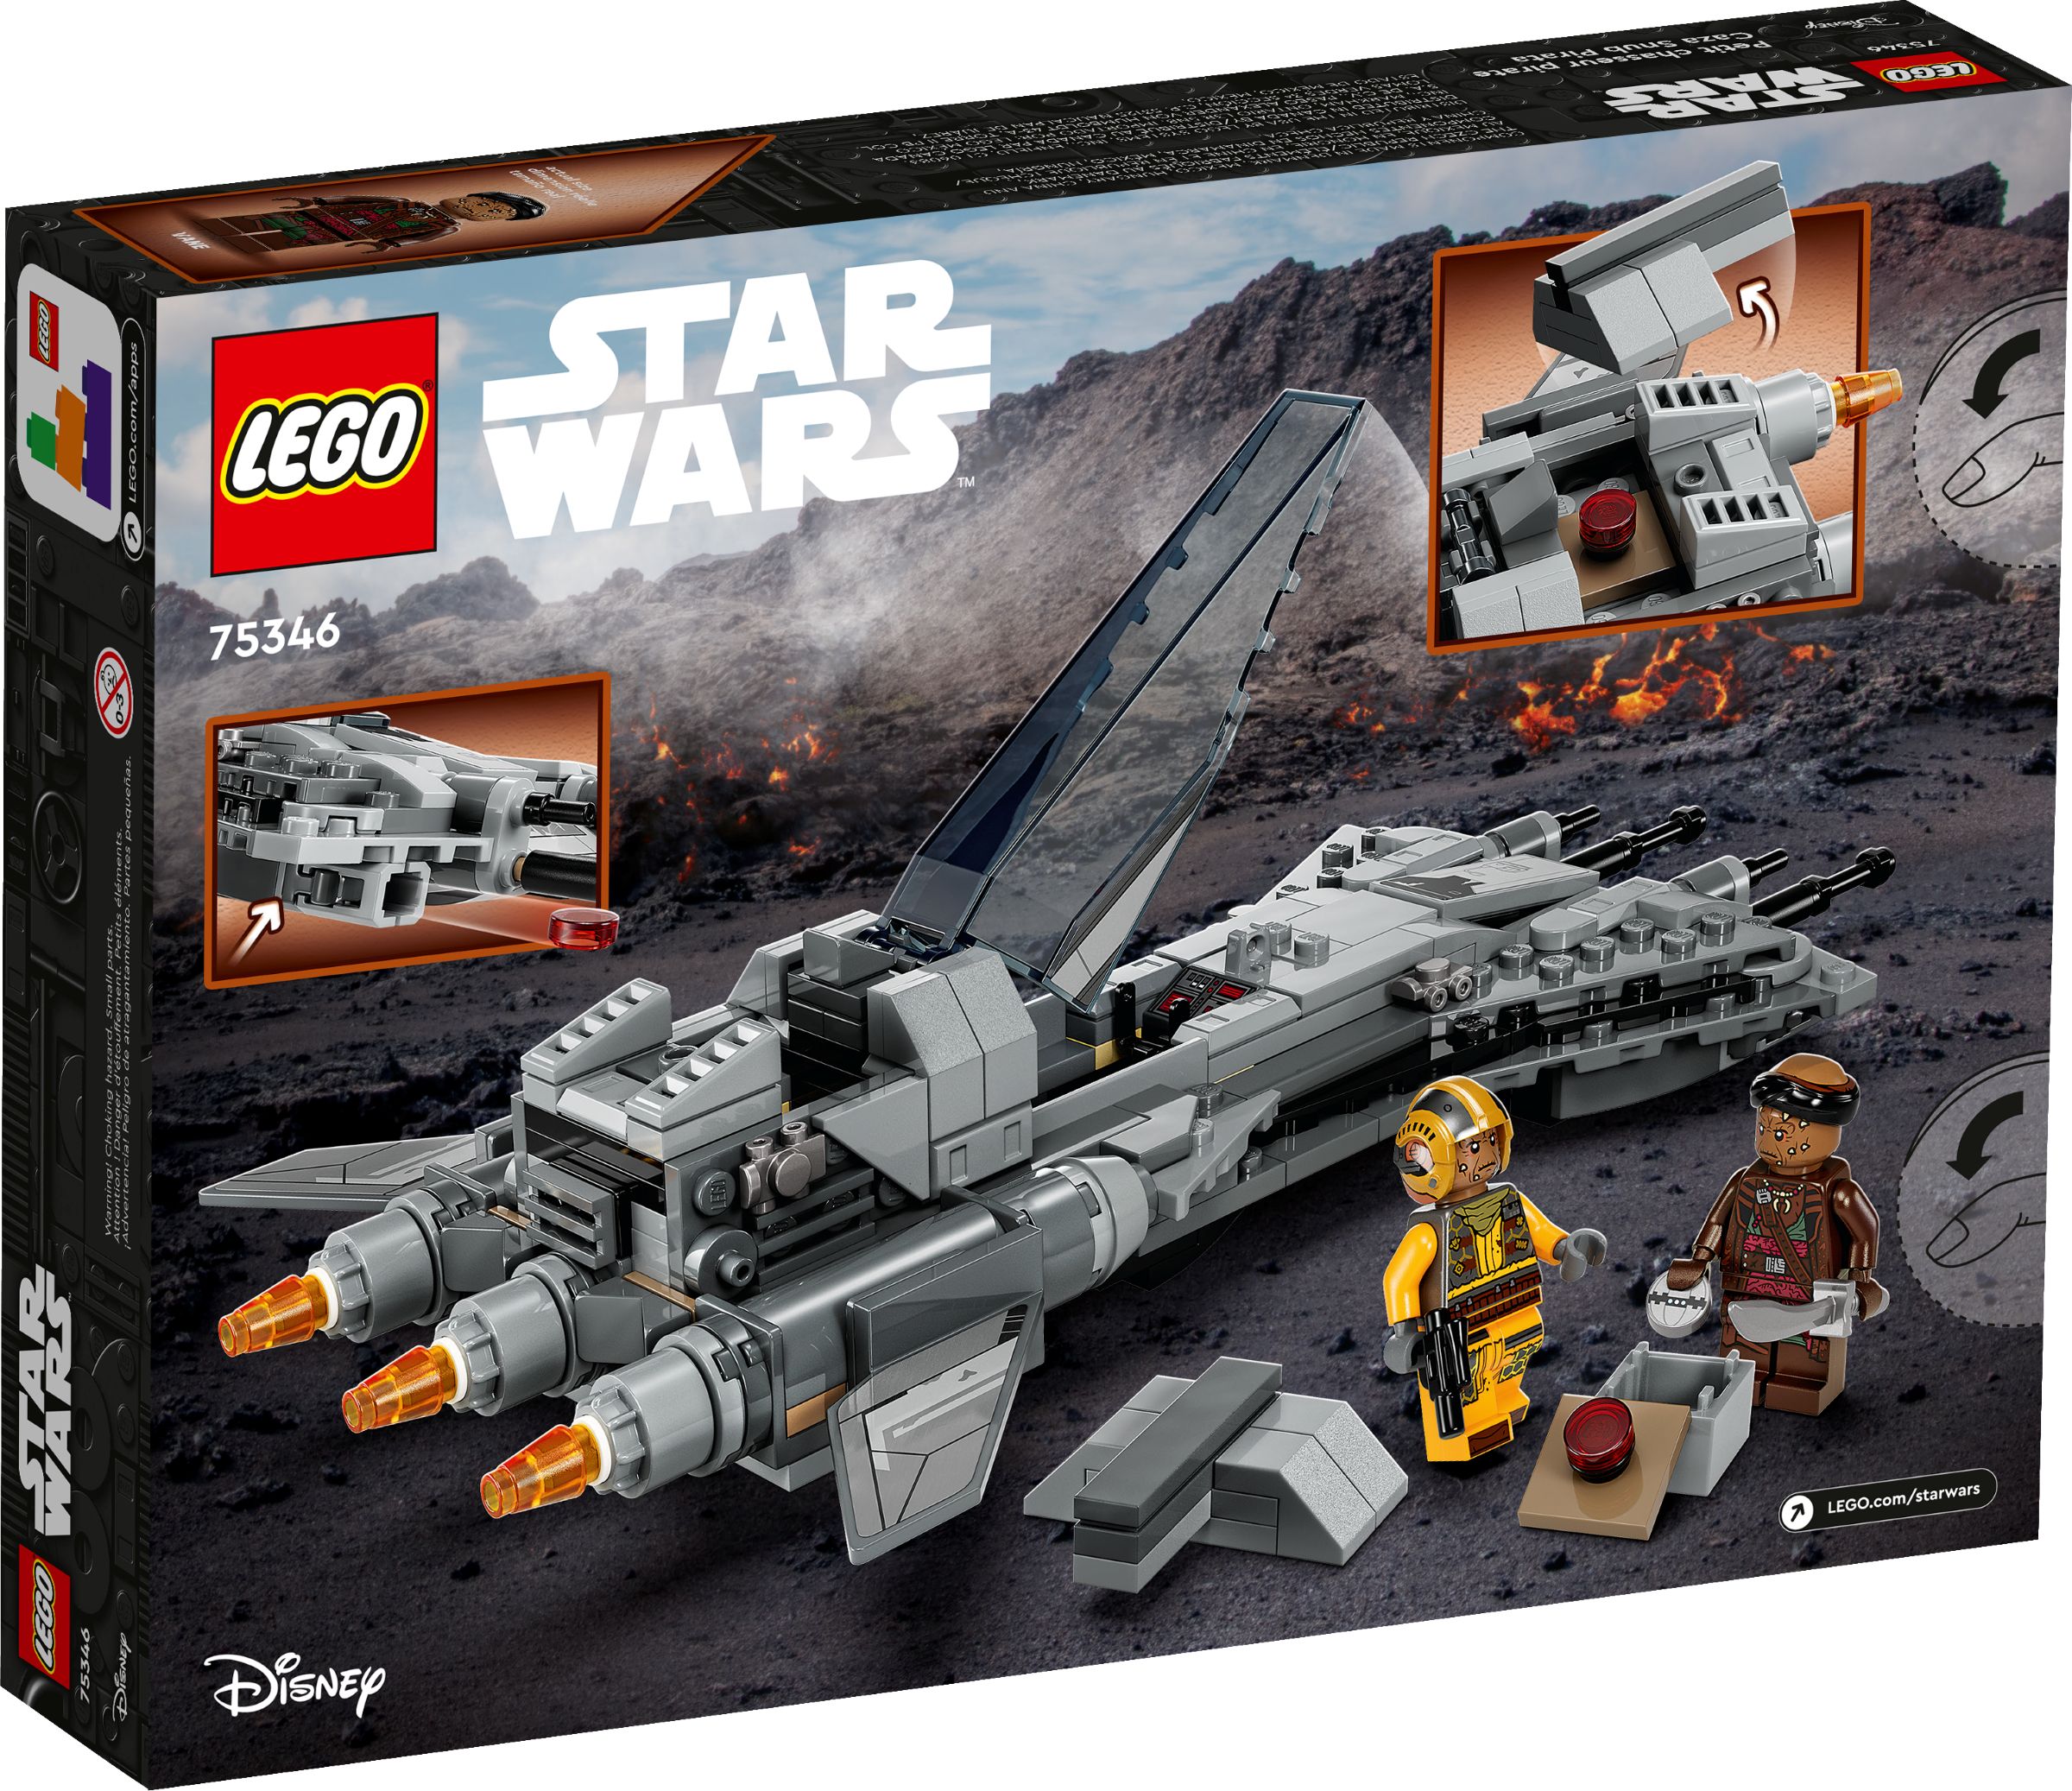 LEGO Star Wars 75346 Snubfighter der Piraten LEGO_75346_alt6.jpg